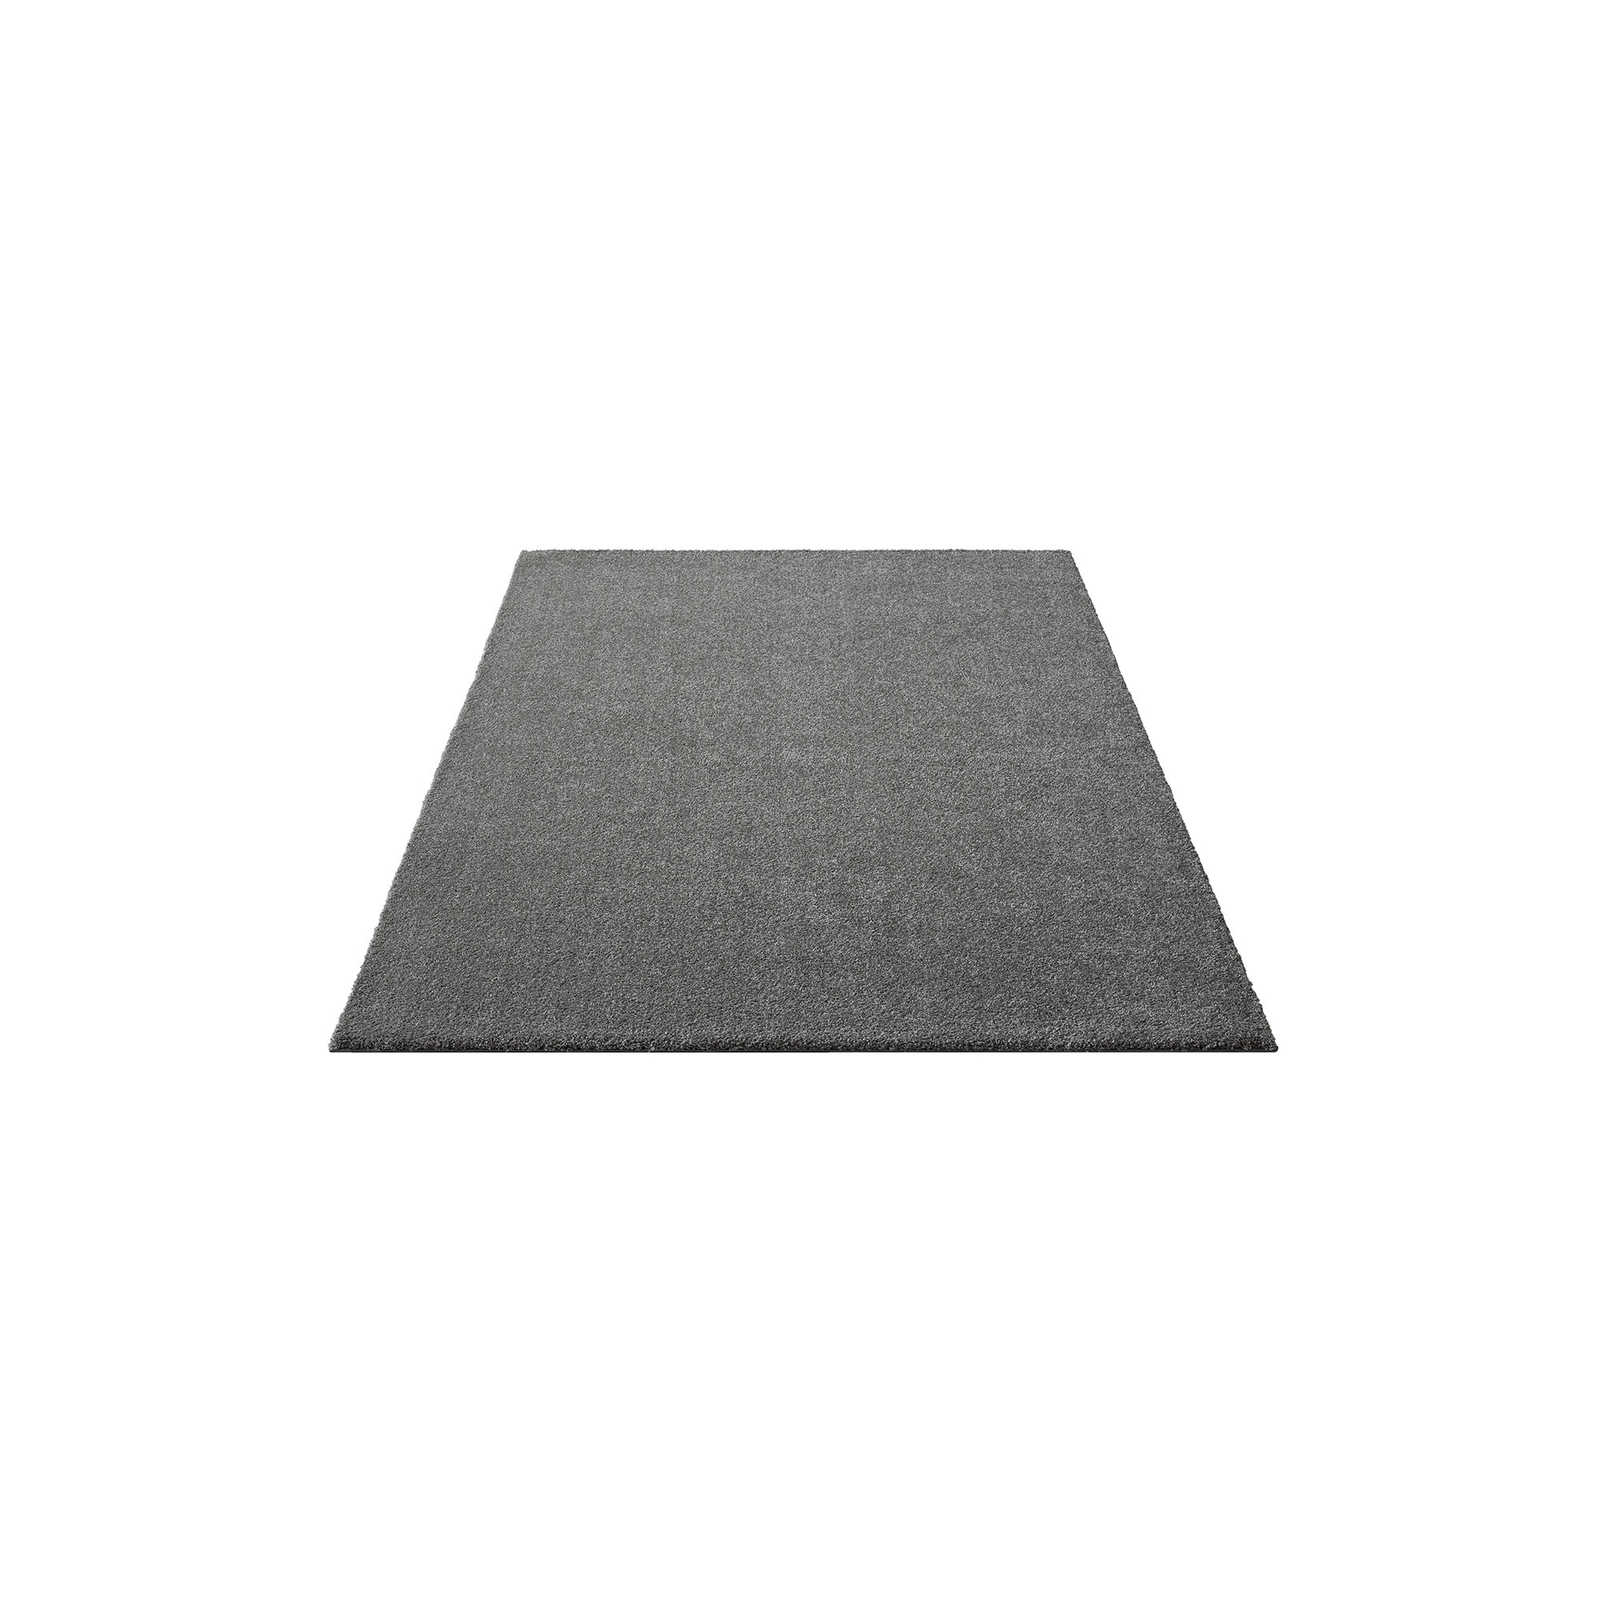 Flauschiger Kurzflor Teppich in Grau – 170 x 120 cm
